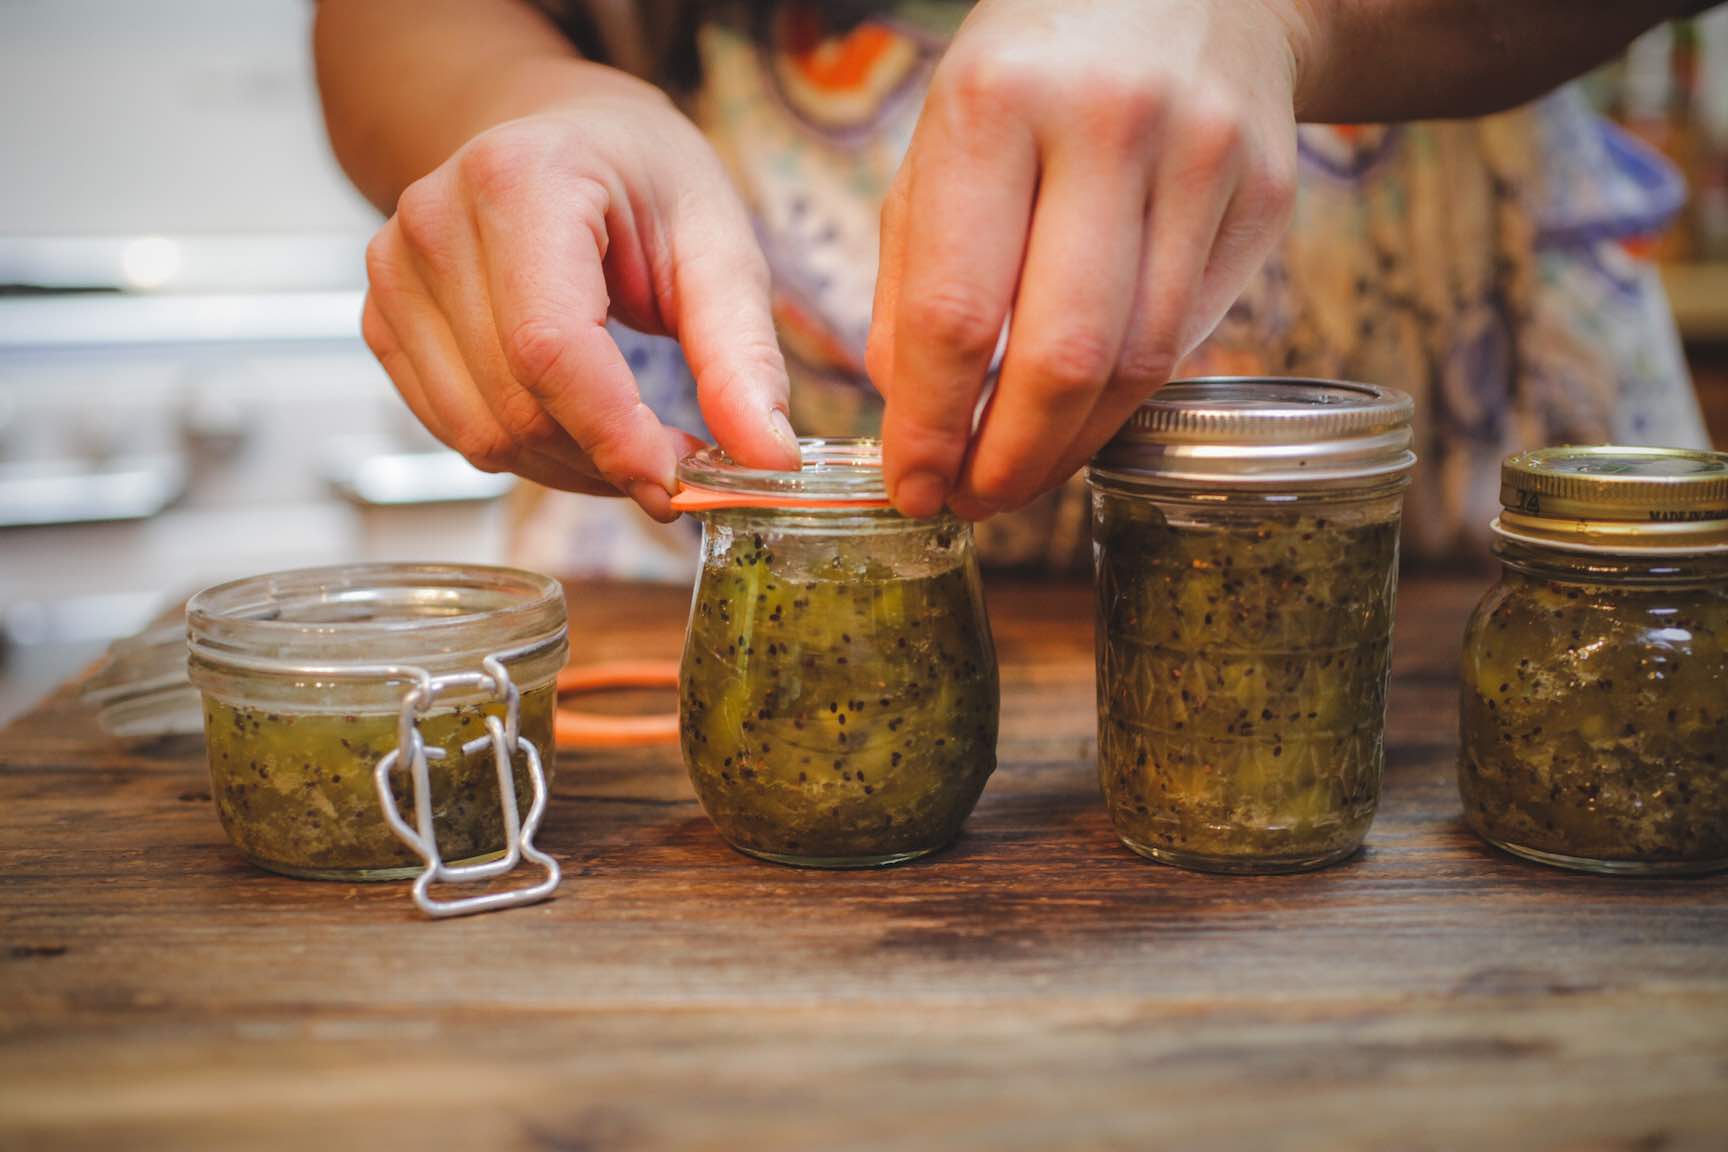 kiwi jam home canning recipe